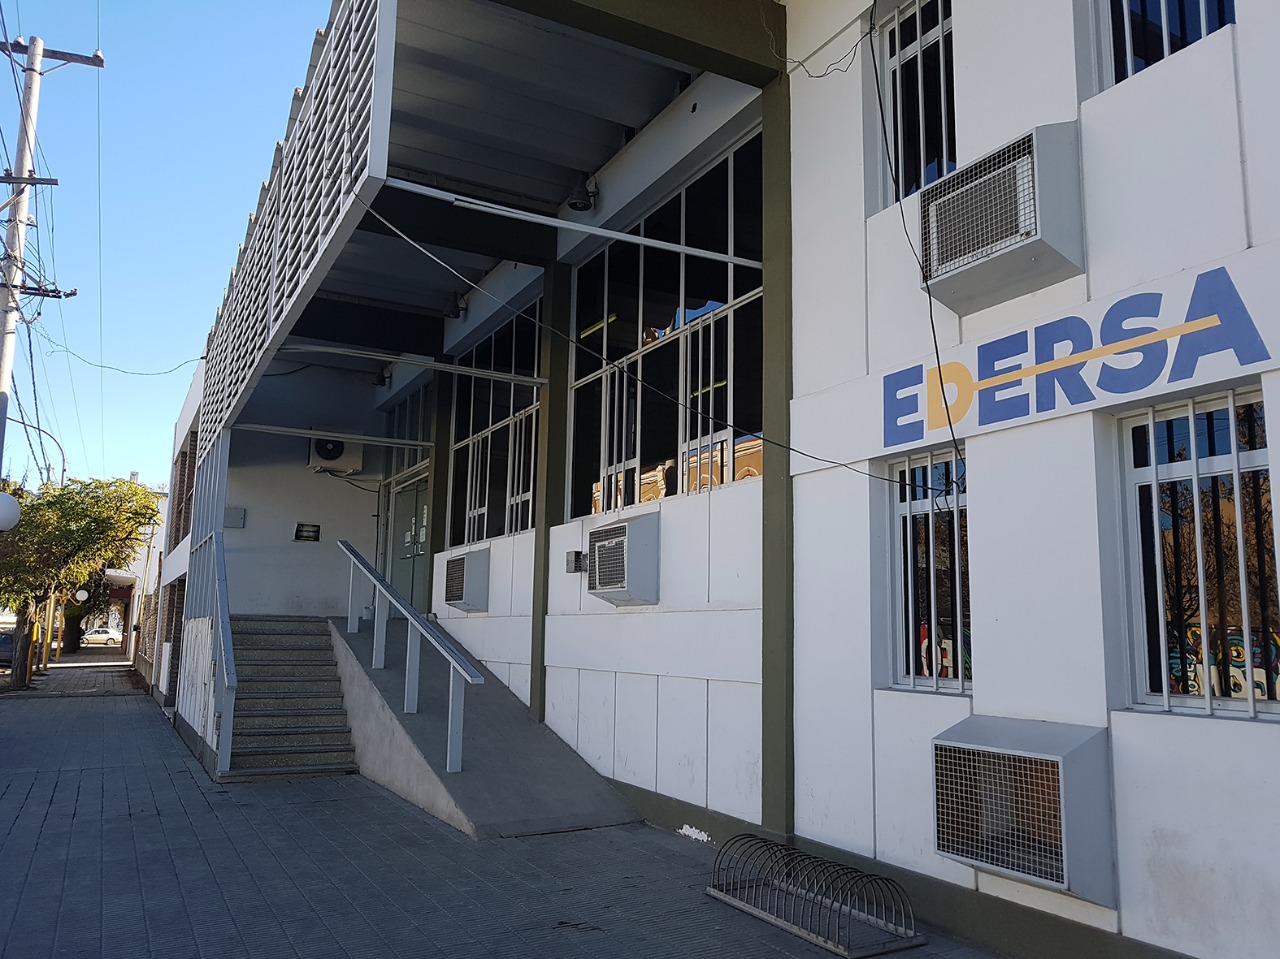 Para la Cámara de Comercio, Edersa incrementó la tarifa eléctrica de manera inconstitucional. (Foto Néstor Salas)